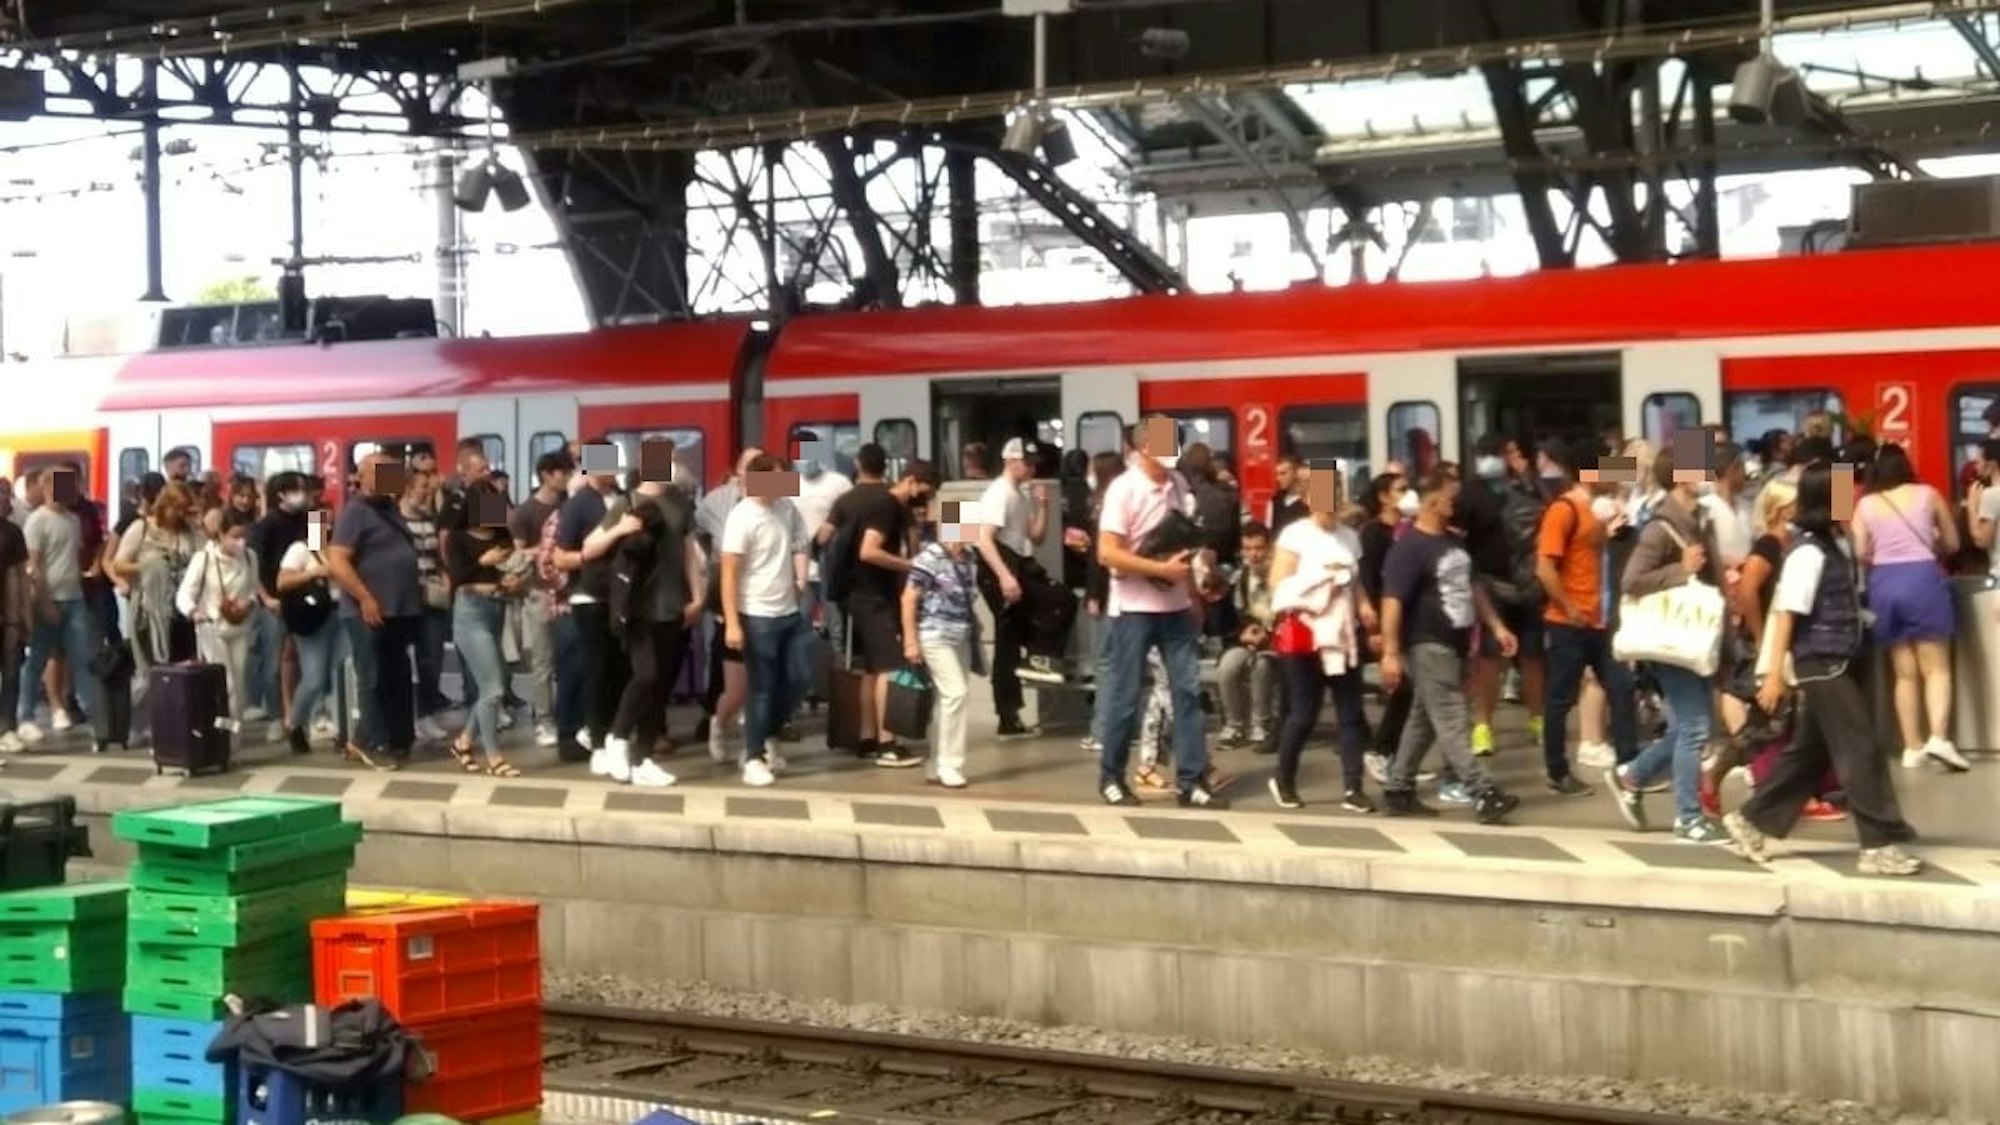 Zahlreiche Menschen auf einem vollen Bahnsteig in Köln.